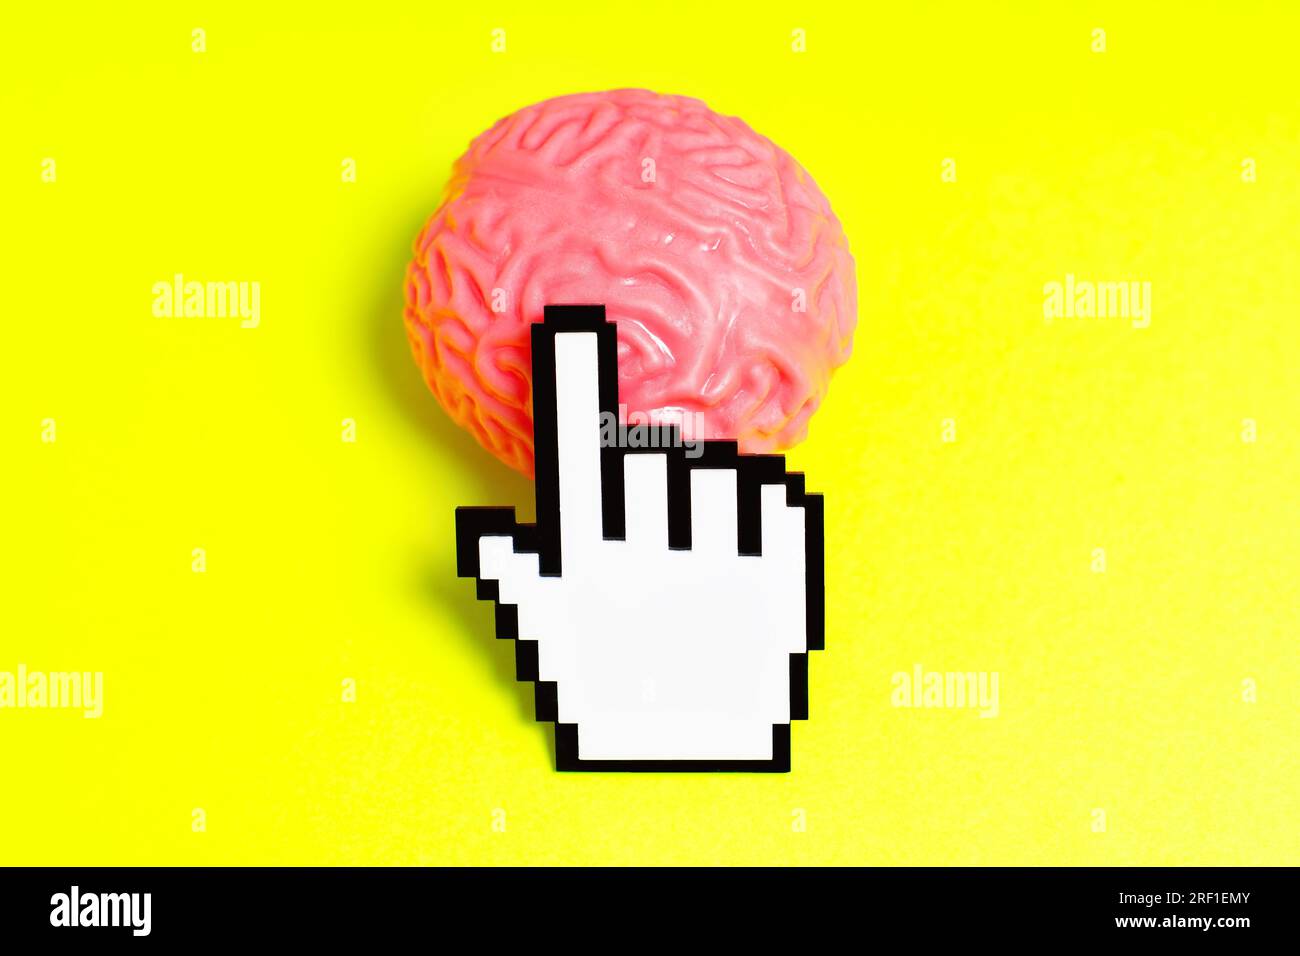 Il cursore della mano in plastica con pixel fa clic su un modello di cervello umano rosa isolato su uno sfondo giallo. Foto Stock